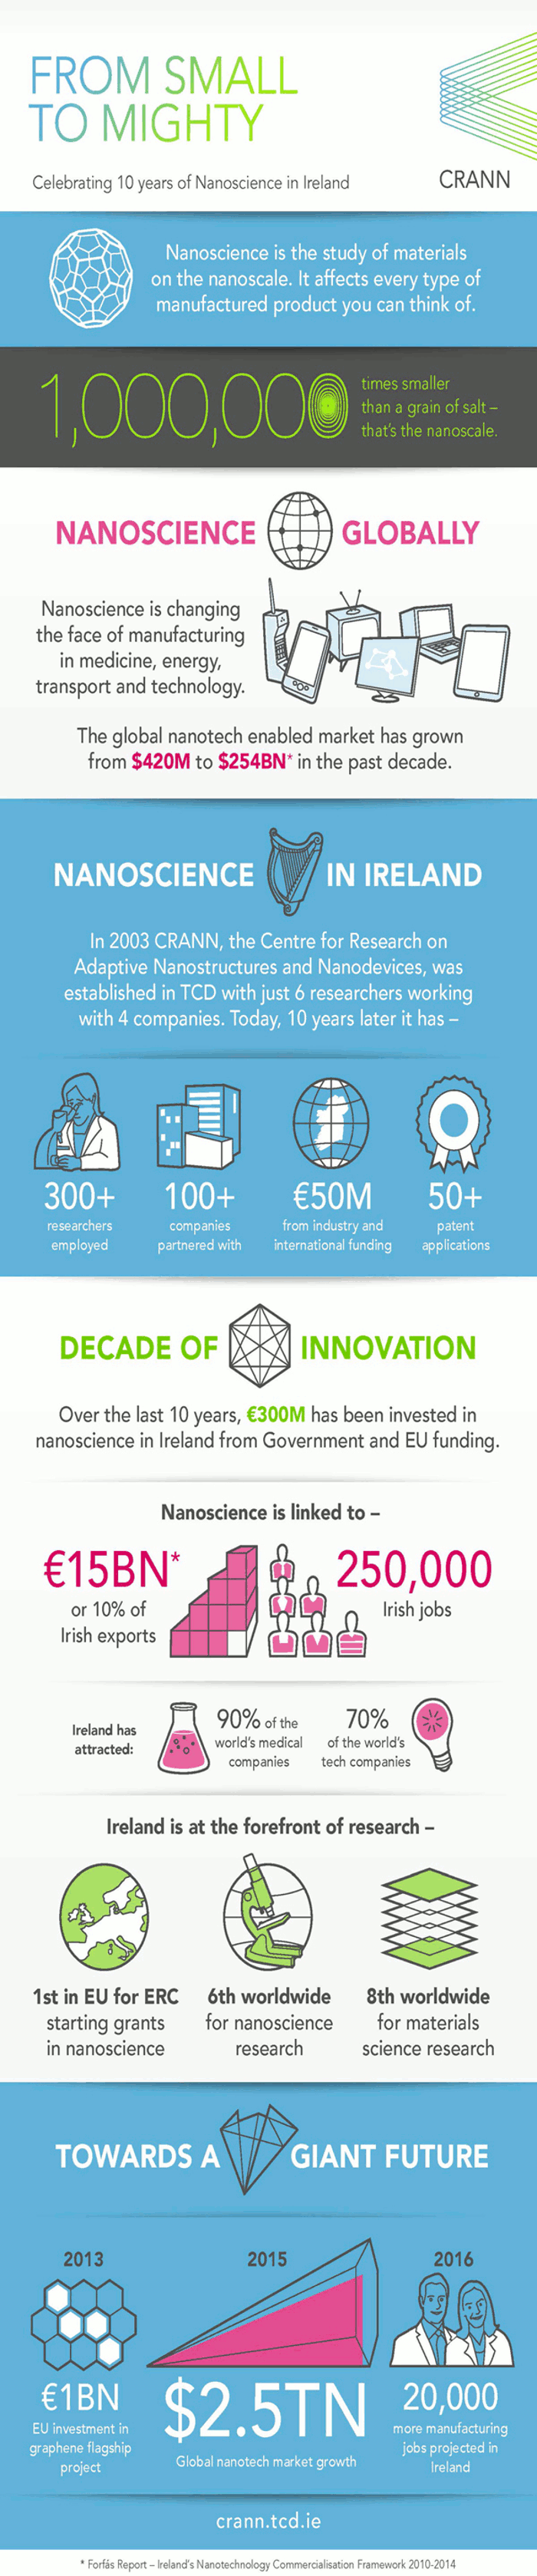 From Small To Mighty Ireland Nanoscience Globally